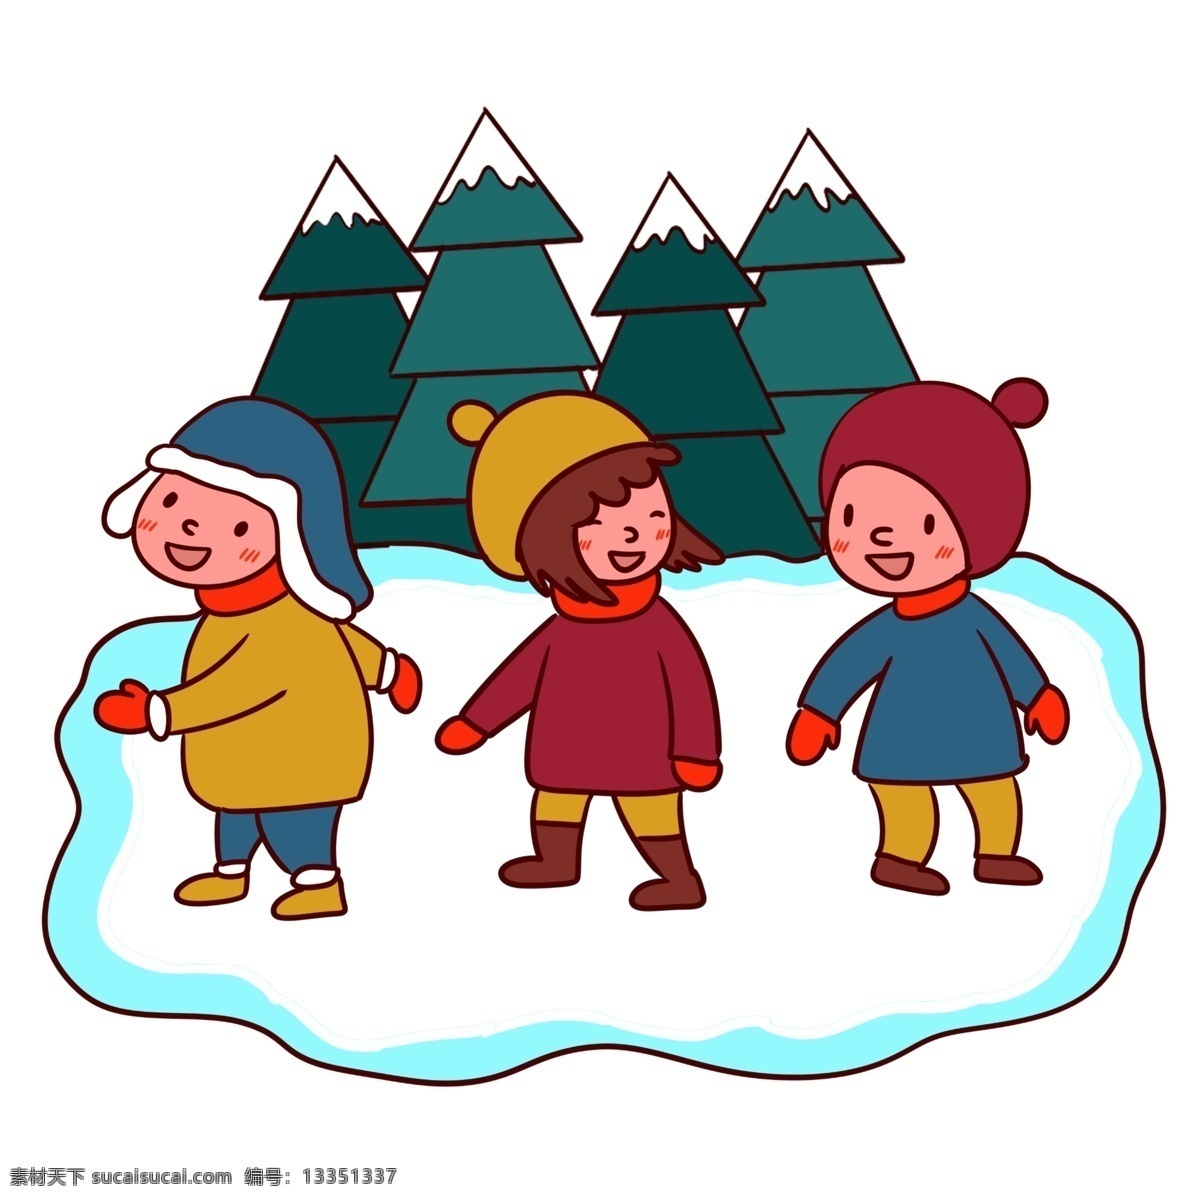 手绘 卡通 可爱 学生 溜冰 寒假 生活 矢量 免抠 寒假生活 玩耍 快乐 棉衣 保暖 冬天 滑冰 松树 帽子